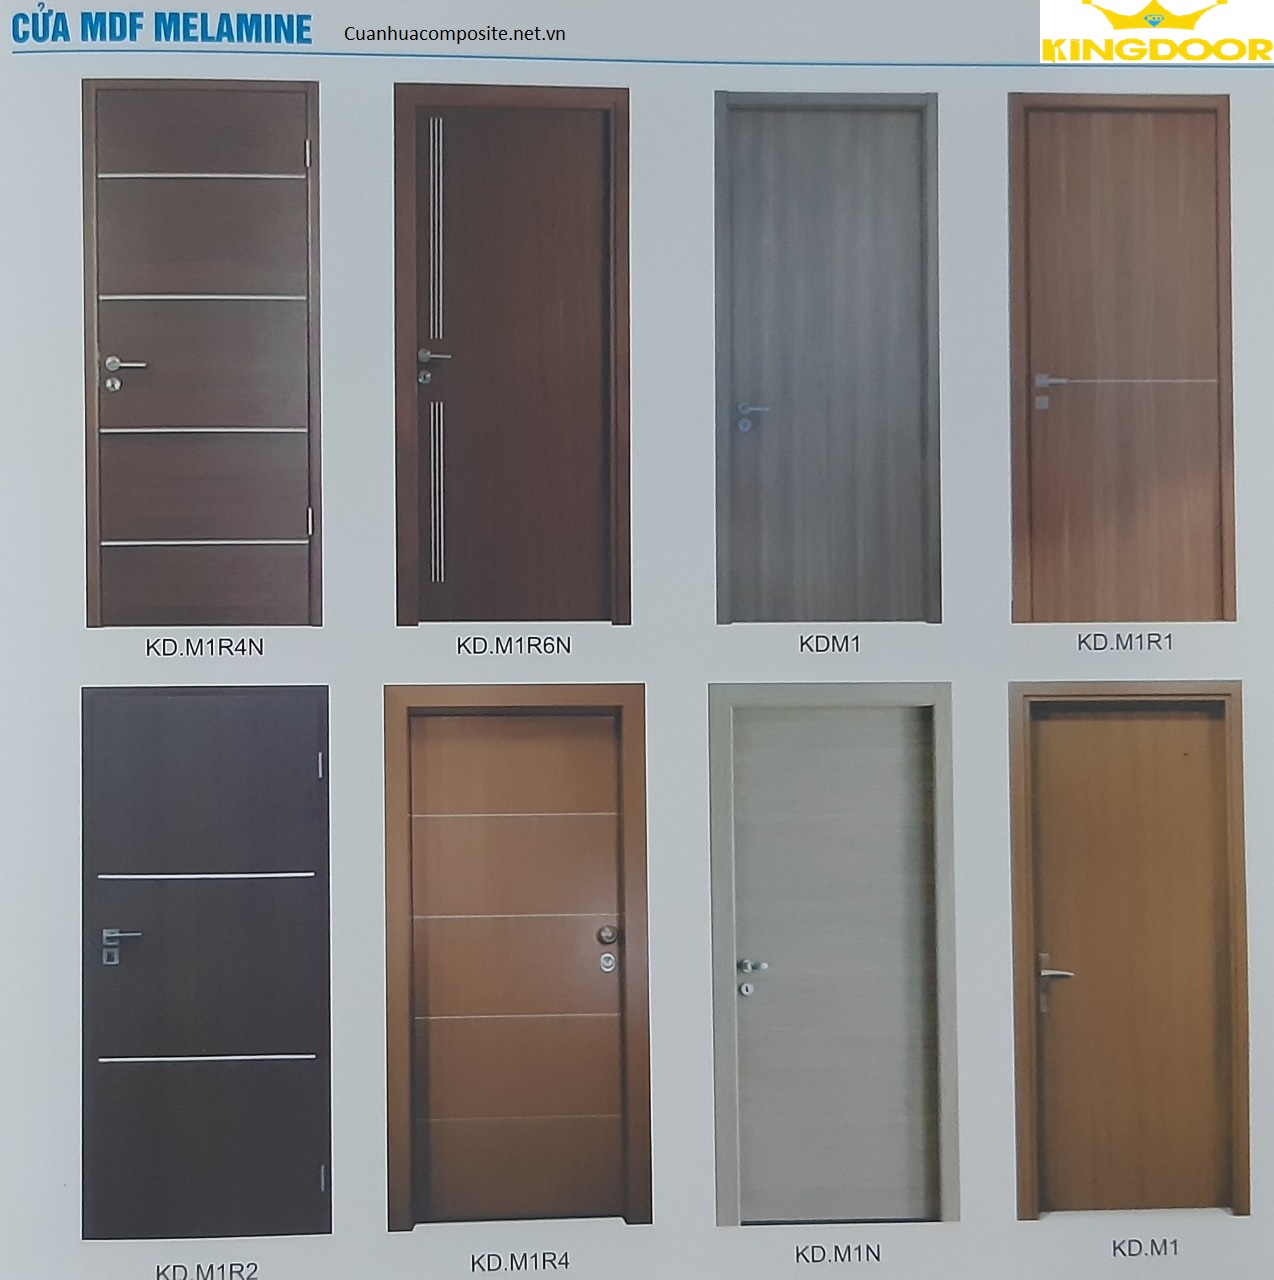 Mẫu cửa gỗ MDF Melamine khách có thể chọn nhiều loại ván phủ lớp ngoài tạo màu sắc đẹp hơn